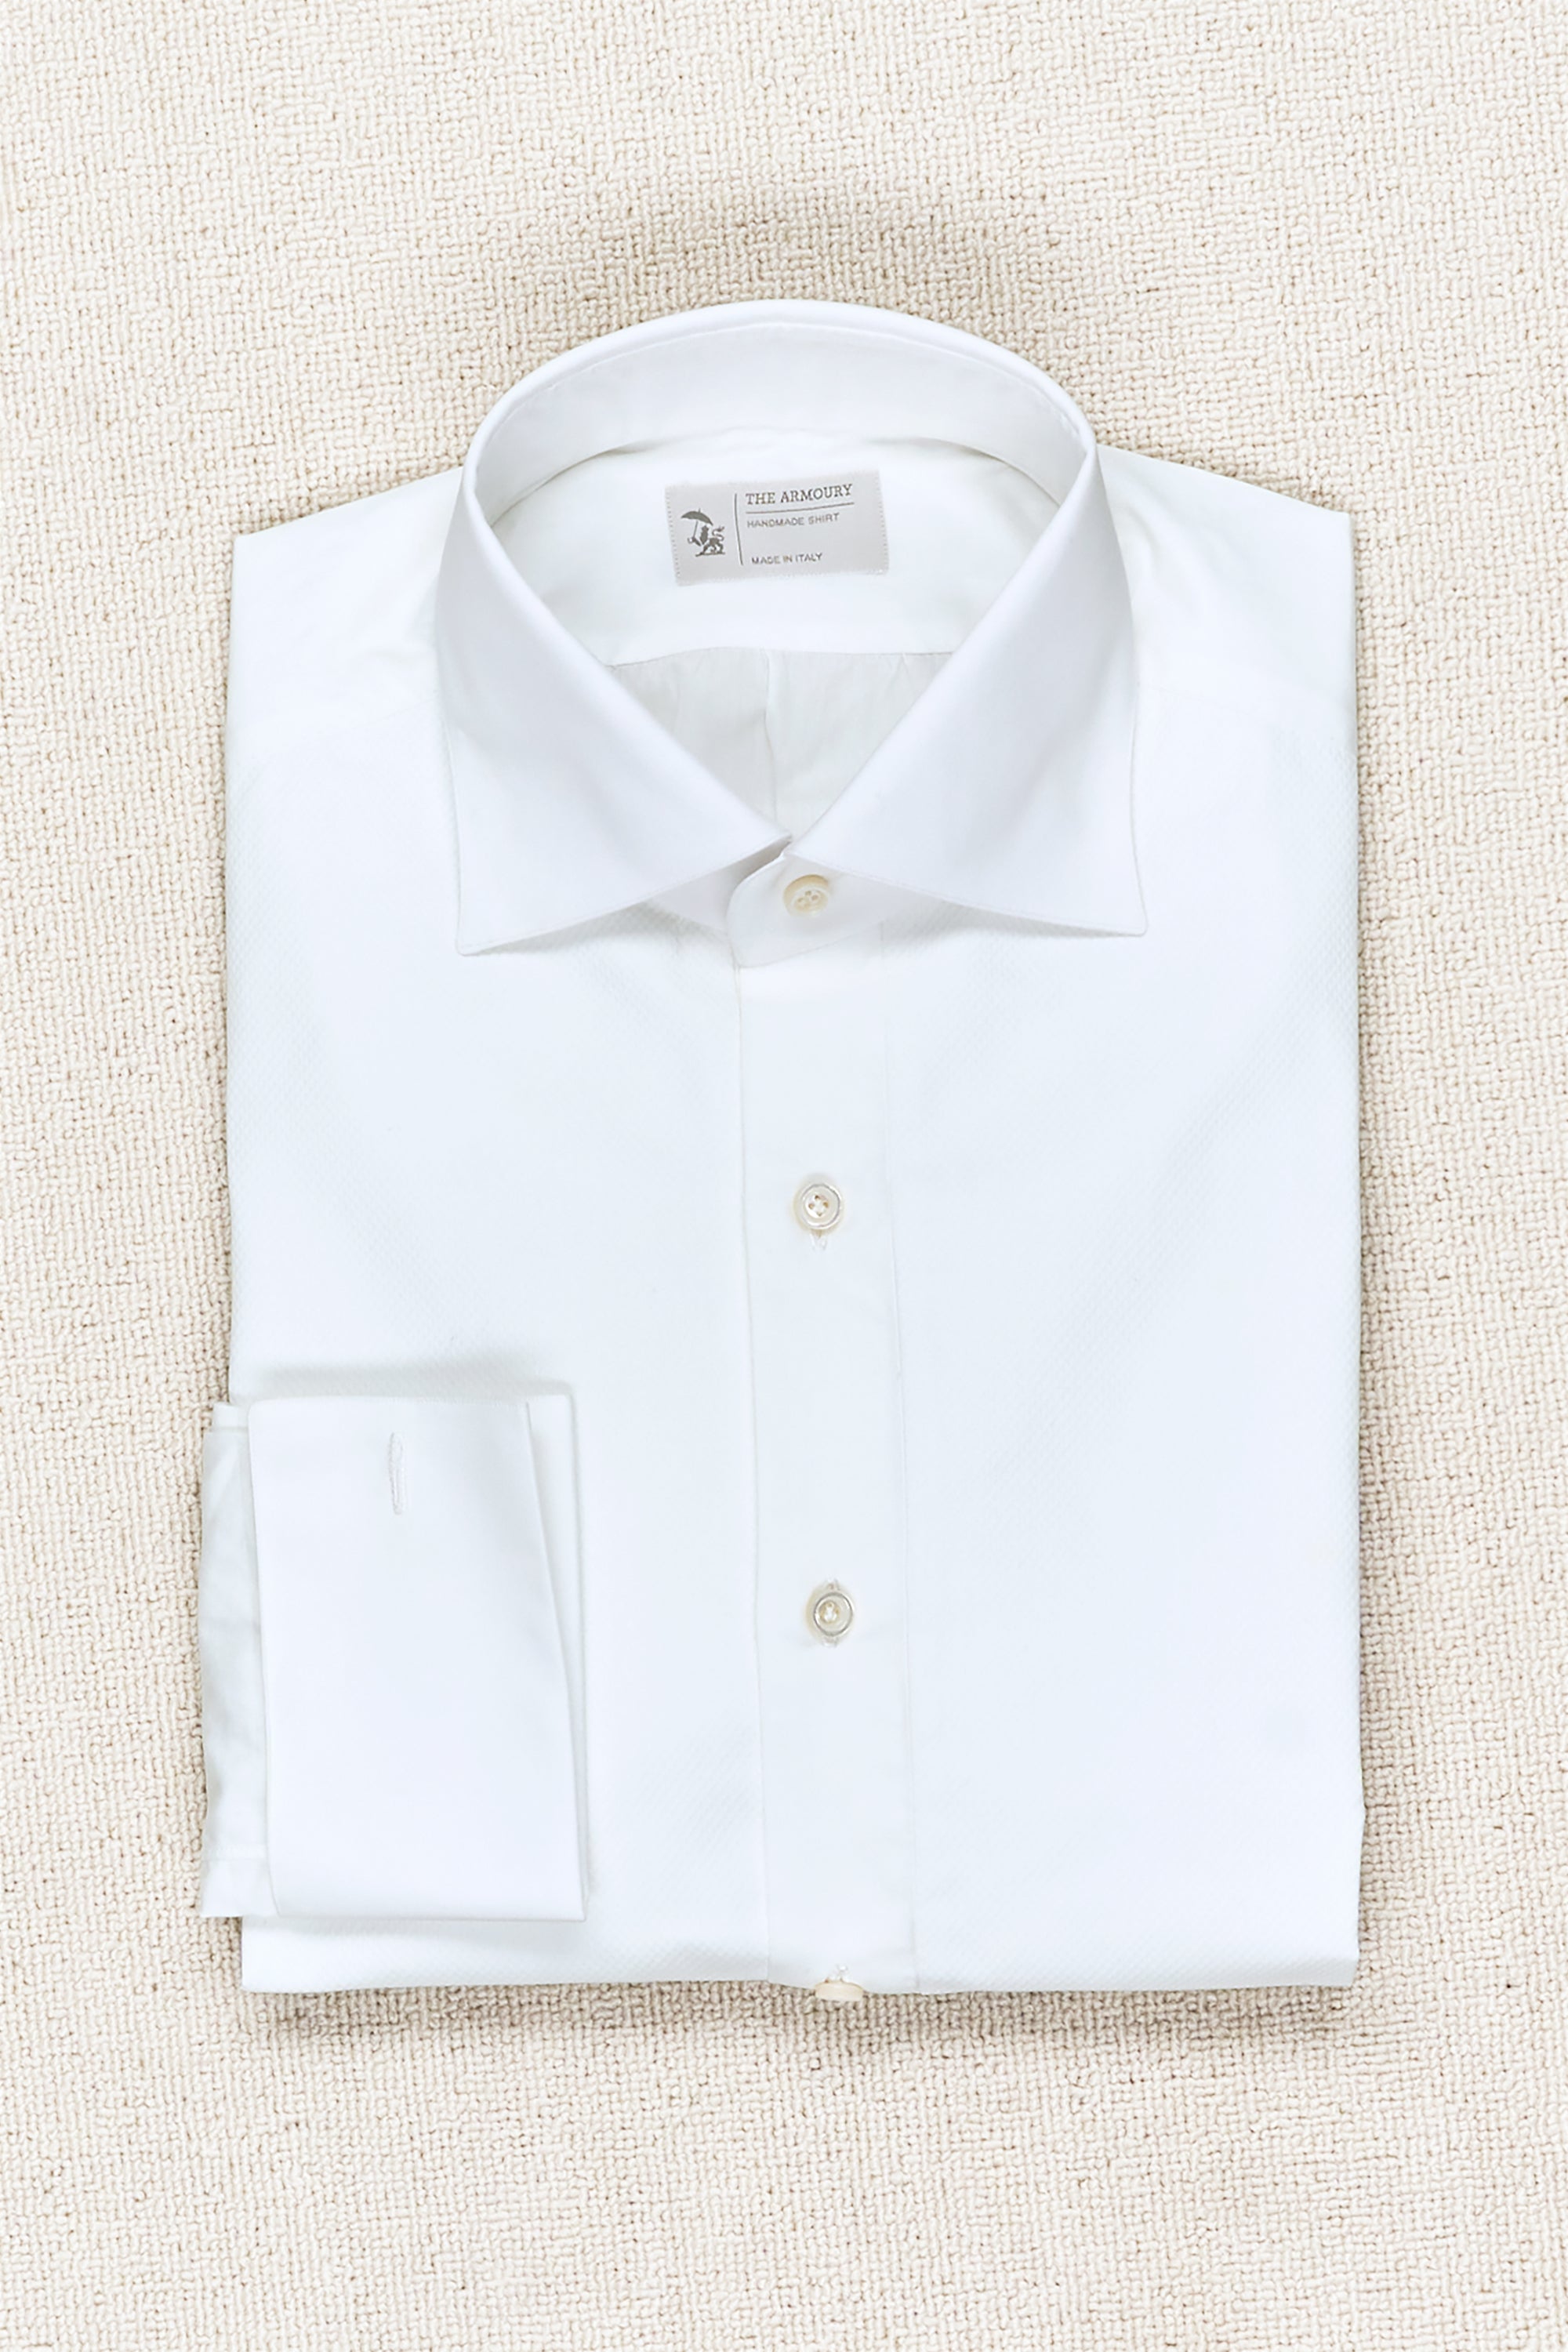 The Armoury White Cotton Tuxedo Shirt MTO *sample*